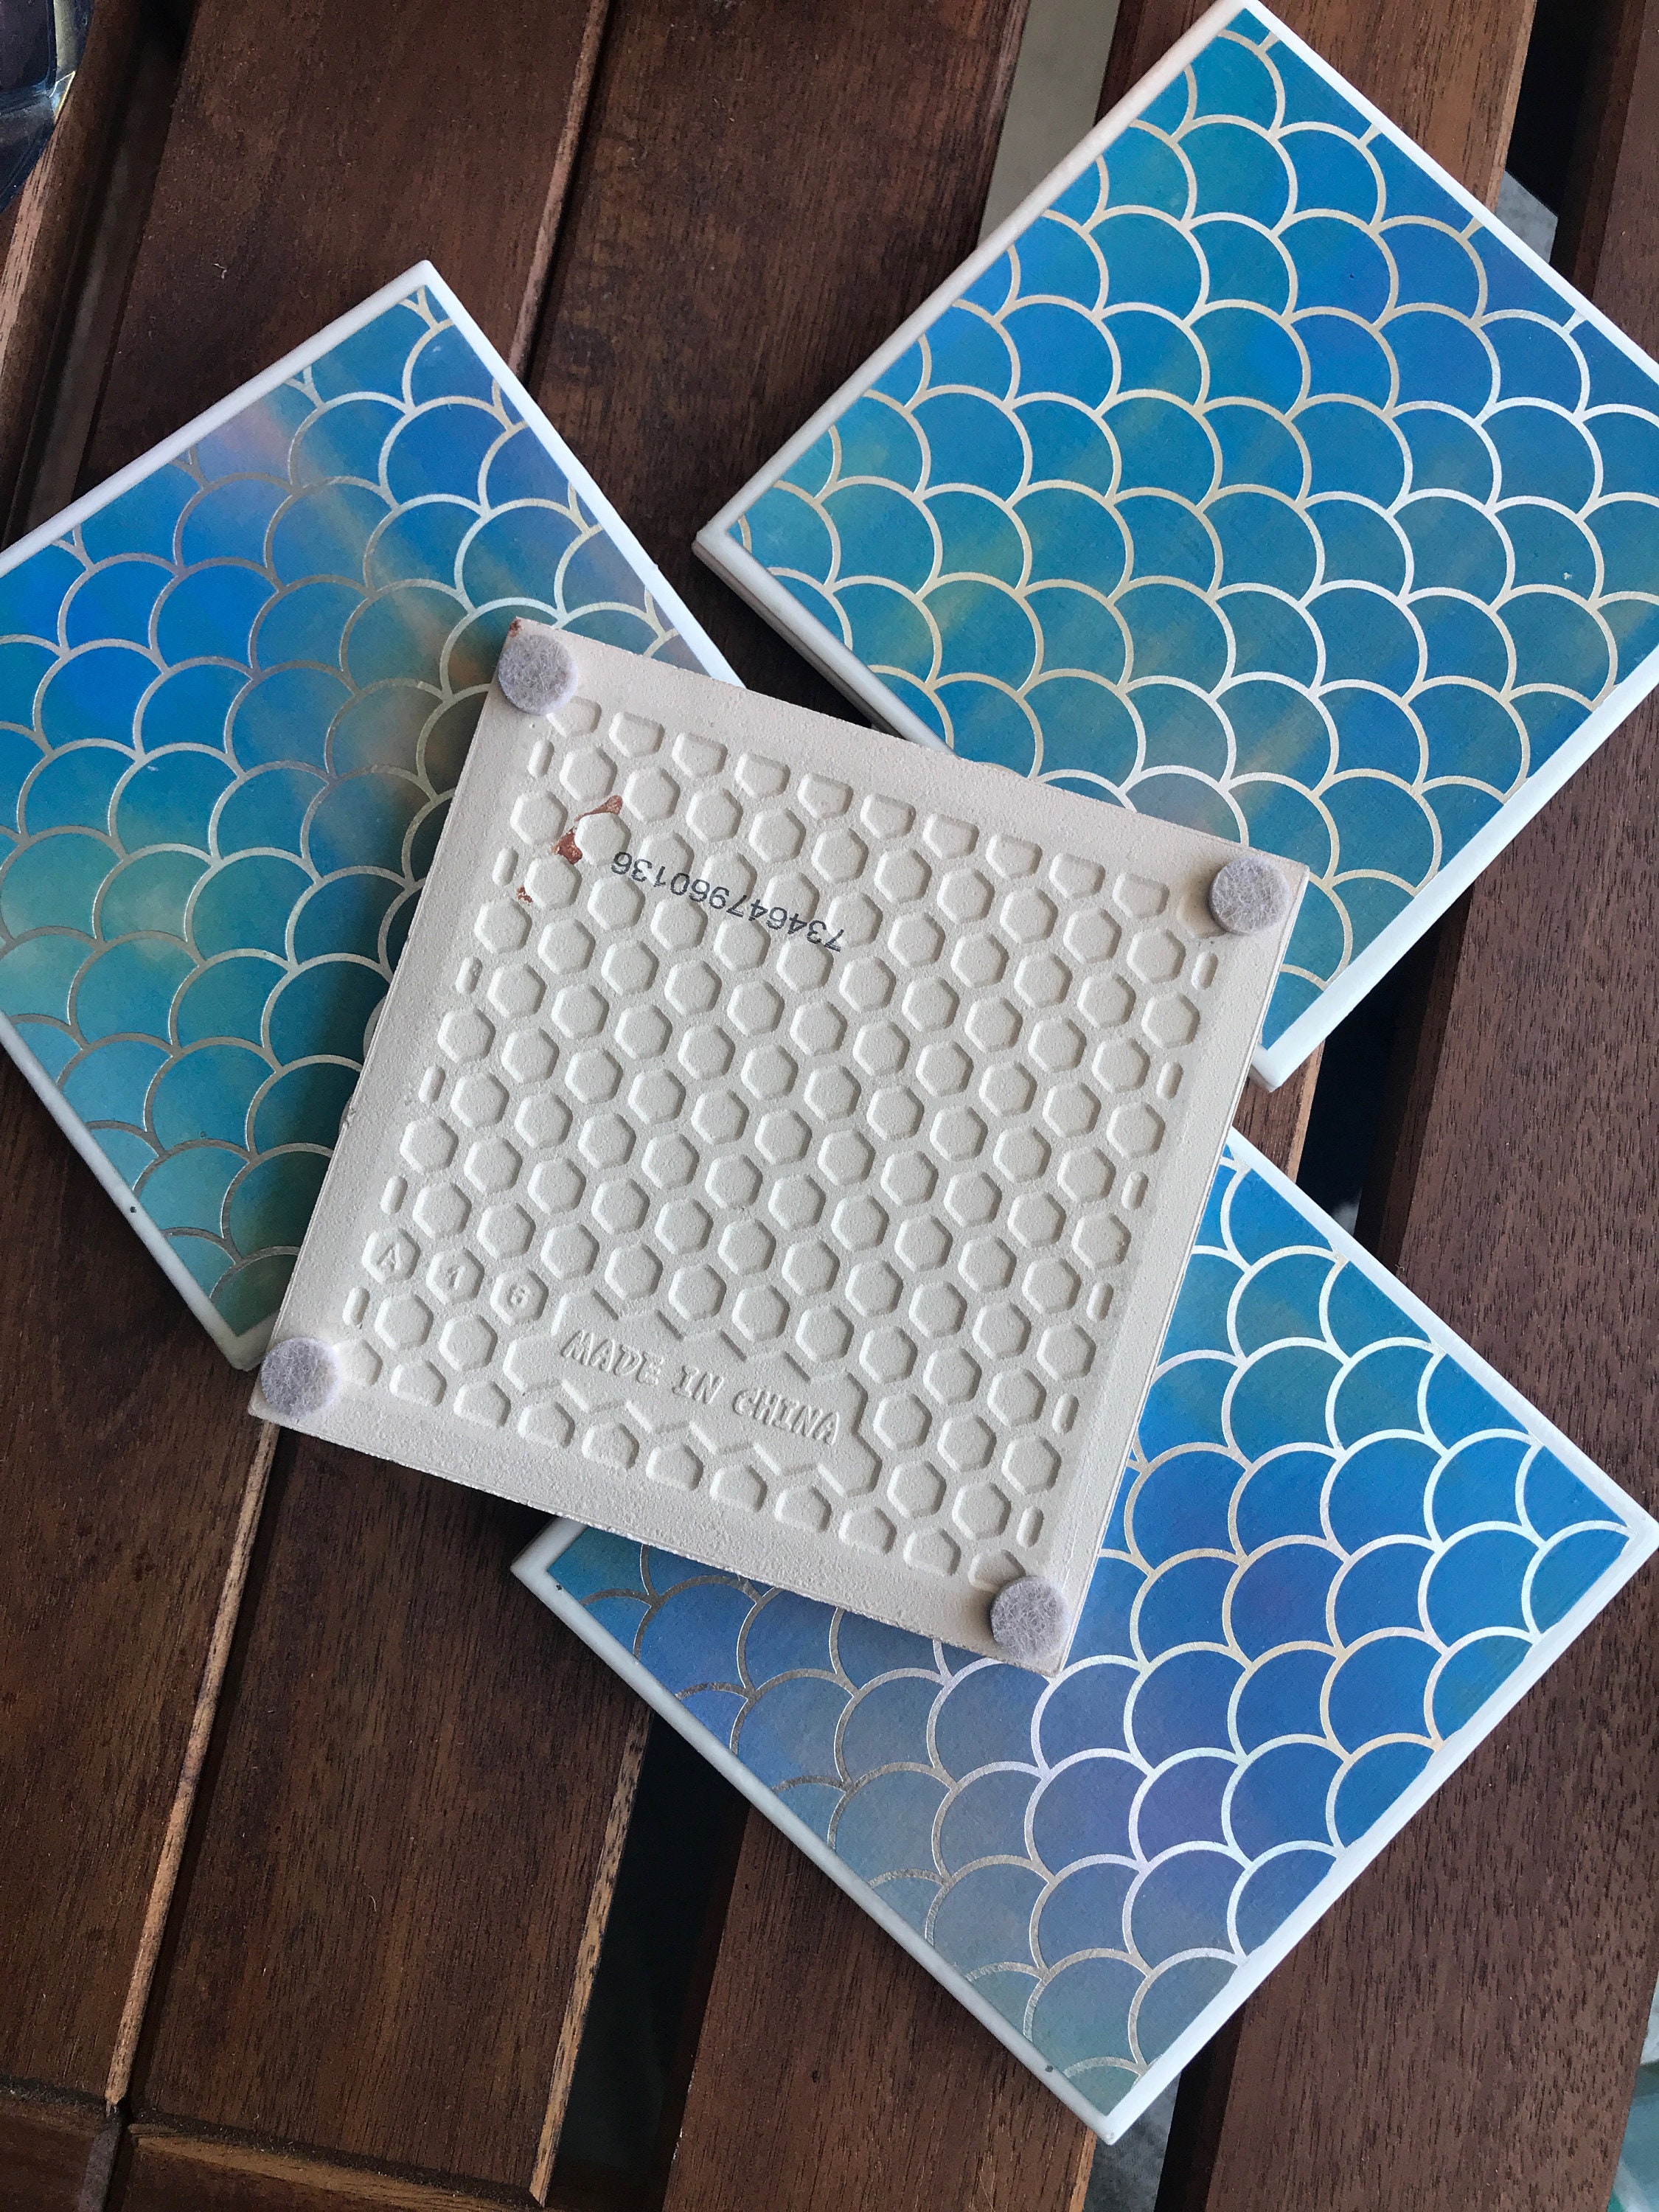 4.25" Mermaid IIllustration Tile Ceramic Coasters Set of 4 